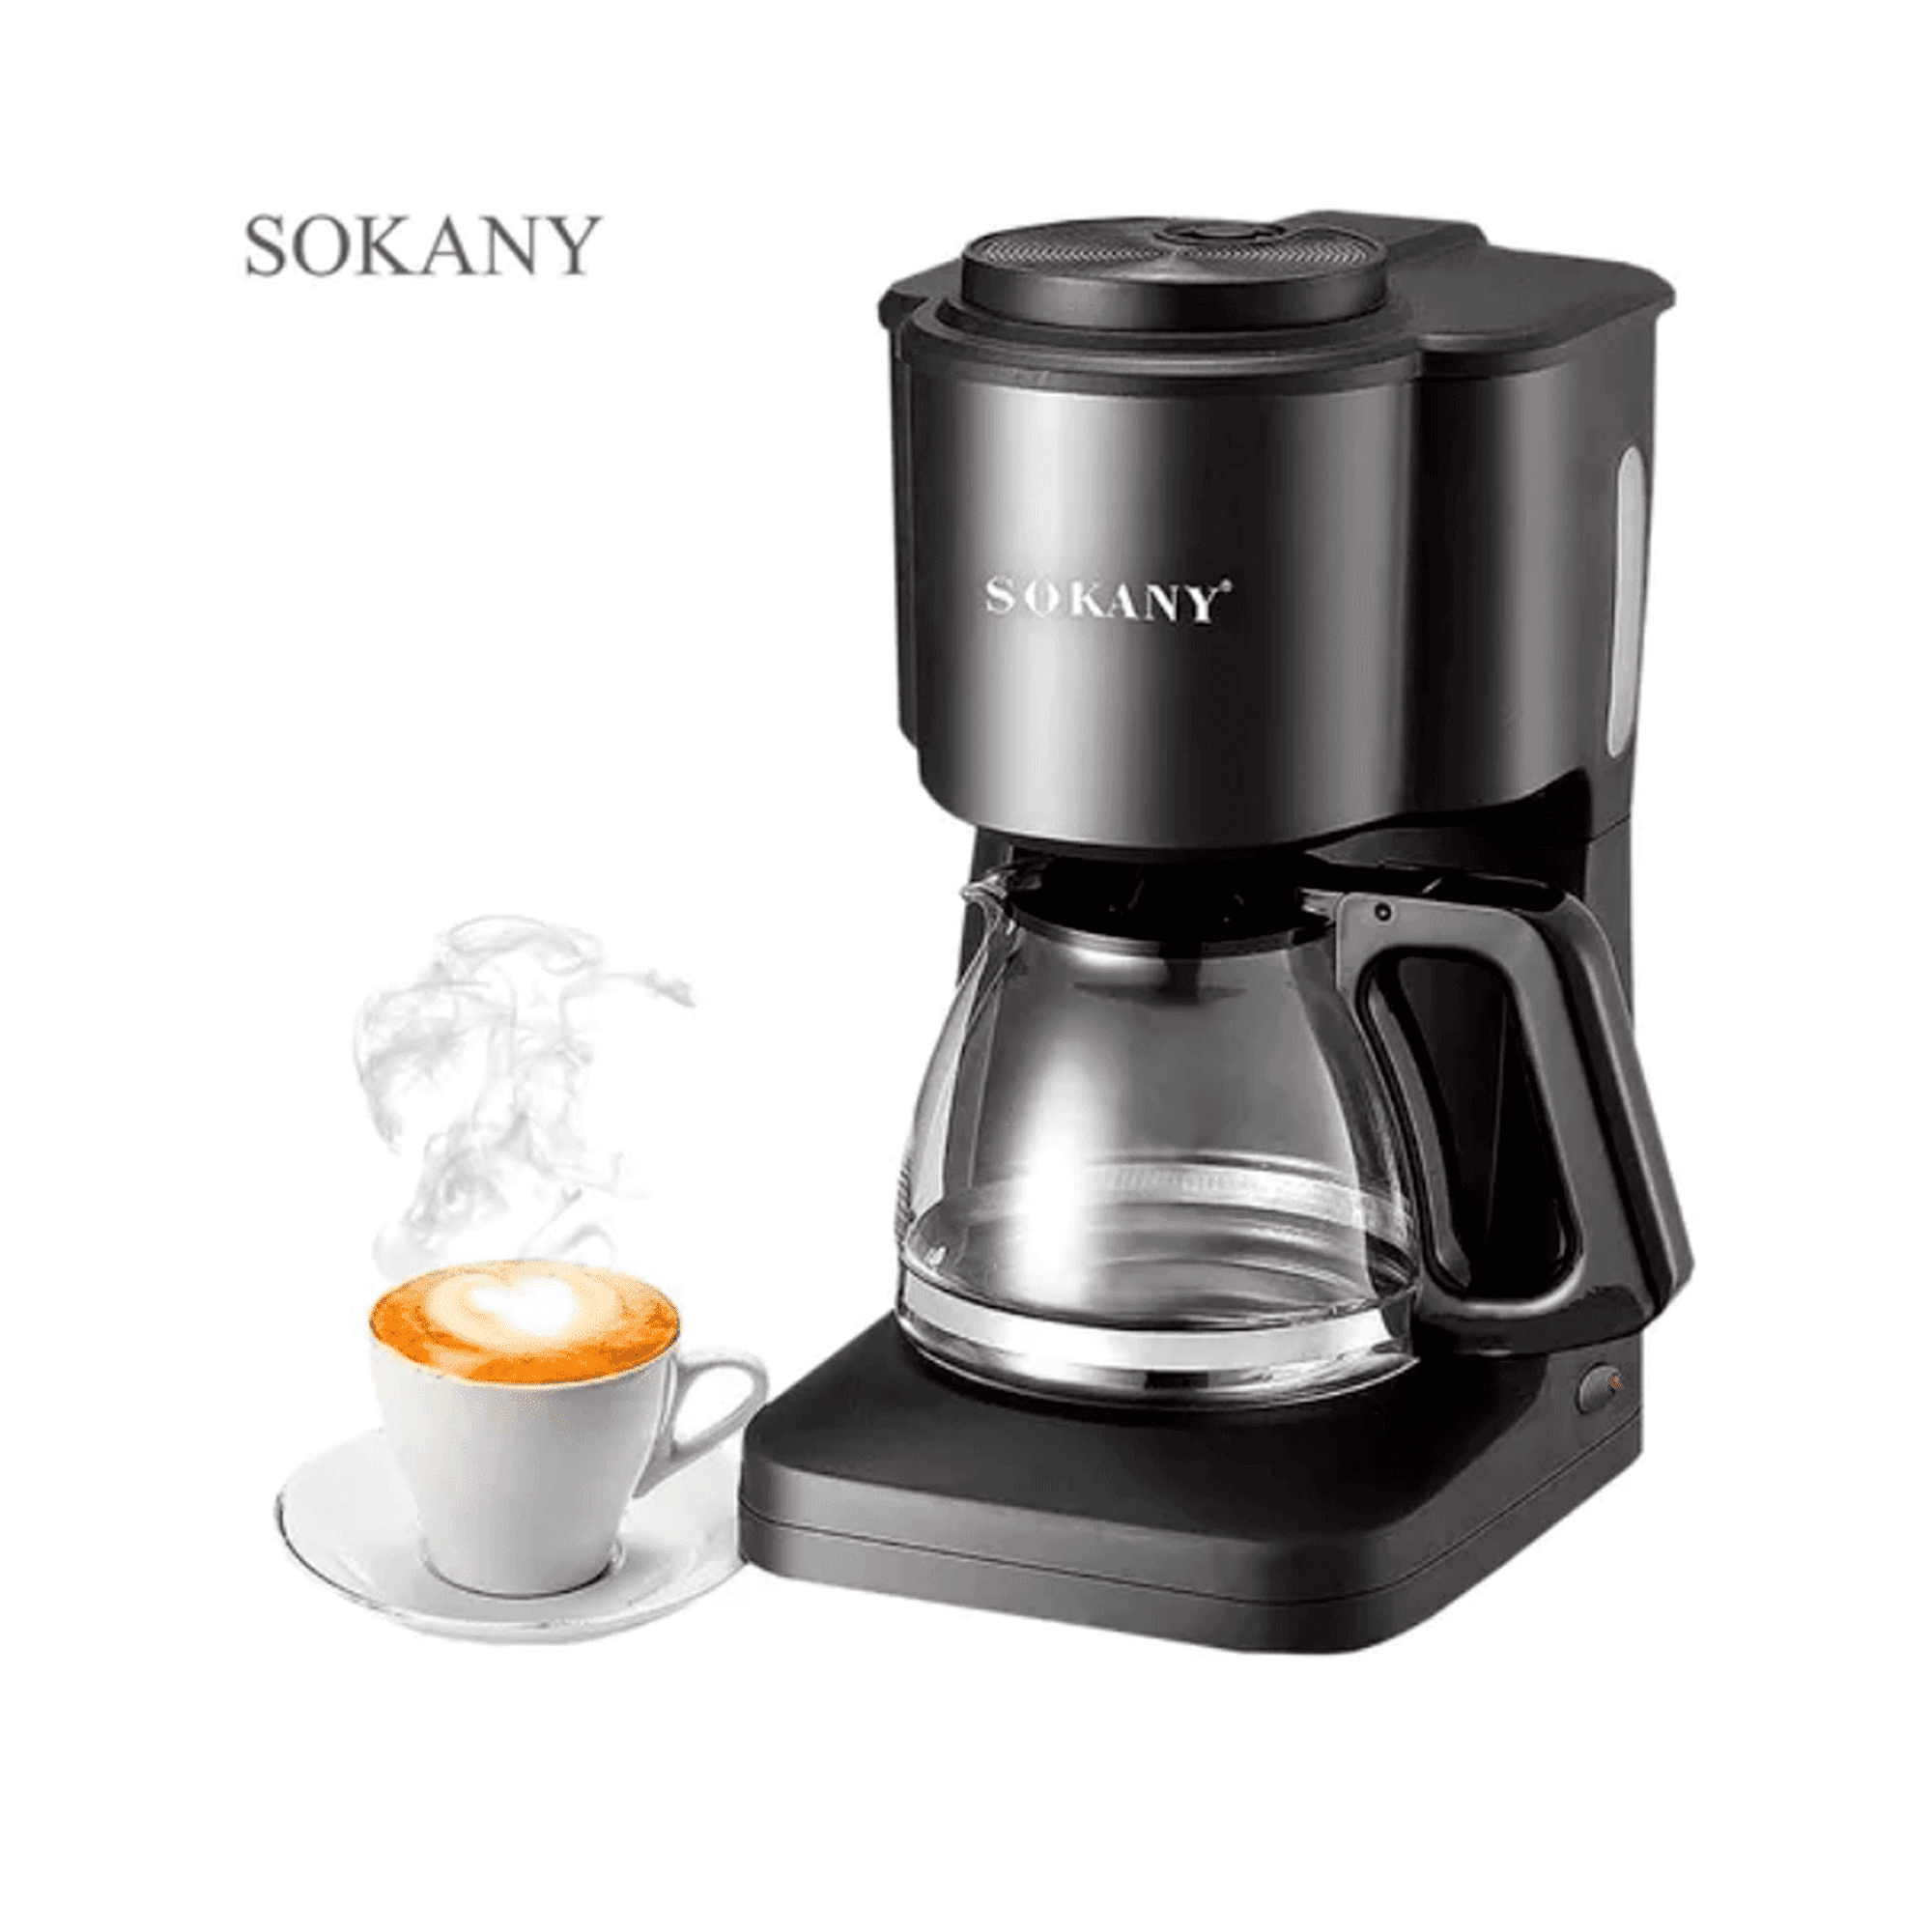 SOKANY Cafetera de goteo de 6 tazas, simplemente prepare una máquina de café  con filtro de goteo compacta, acceso frontal fácil de llenar, función de  mantenimiento automático y sistema inteligente antigoteo. - Trouver